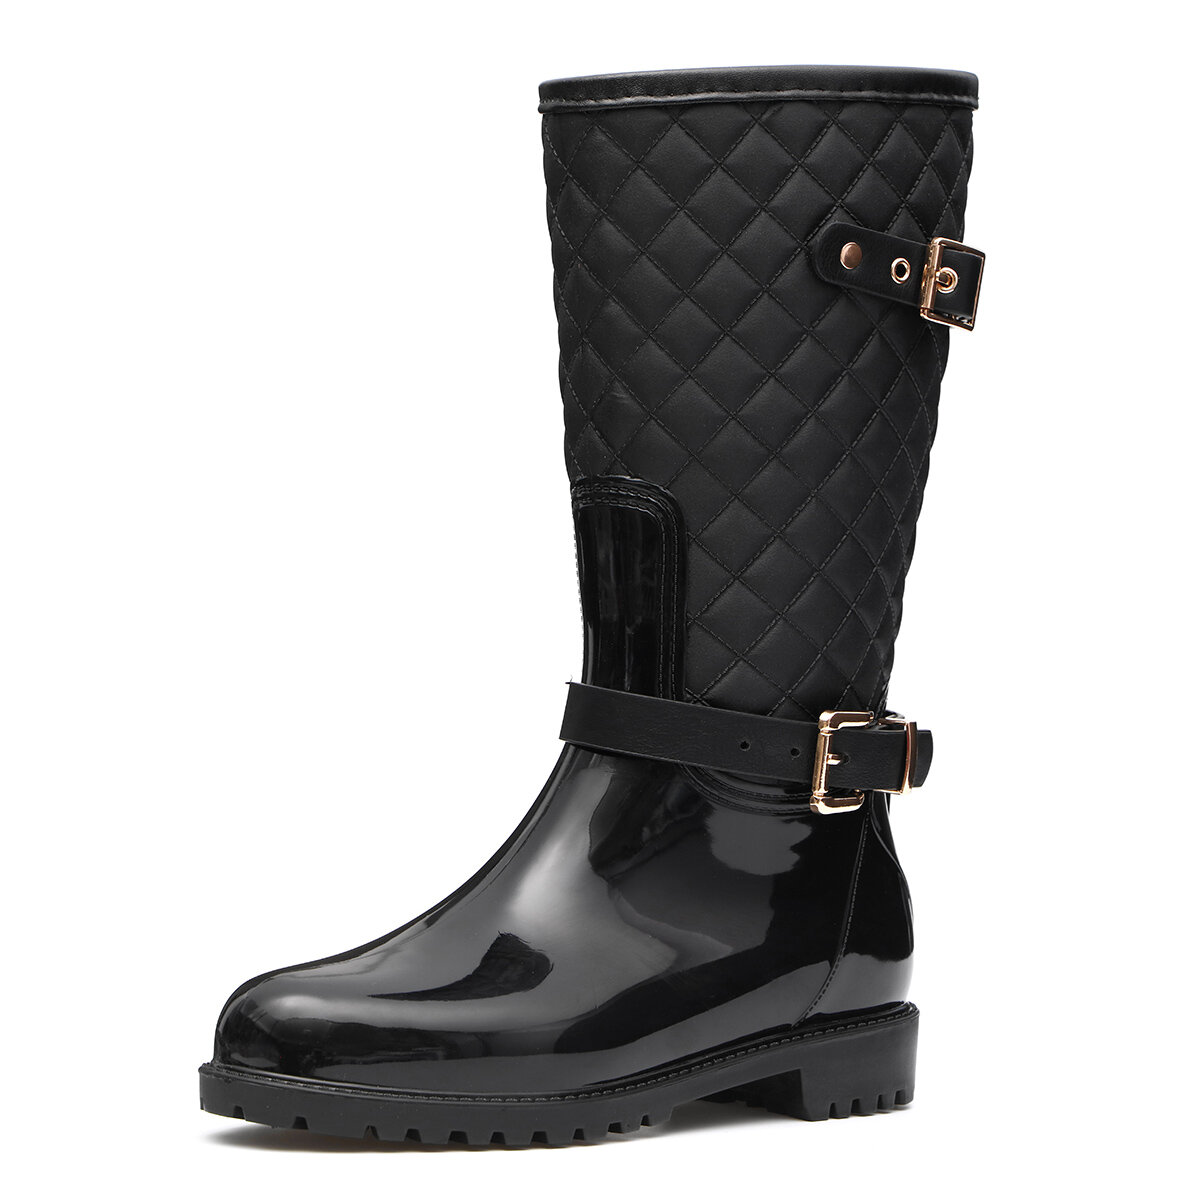 Στα 17.95 € από αποθήκη Κίνας | Women’s Comfortable Waterproof Slip-On Mid-Calf Flat Non-Slip Rain Boots